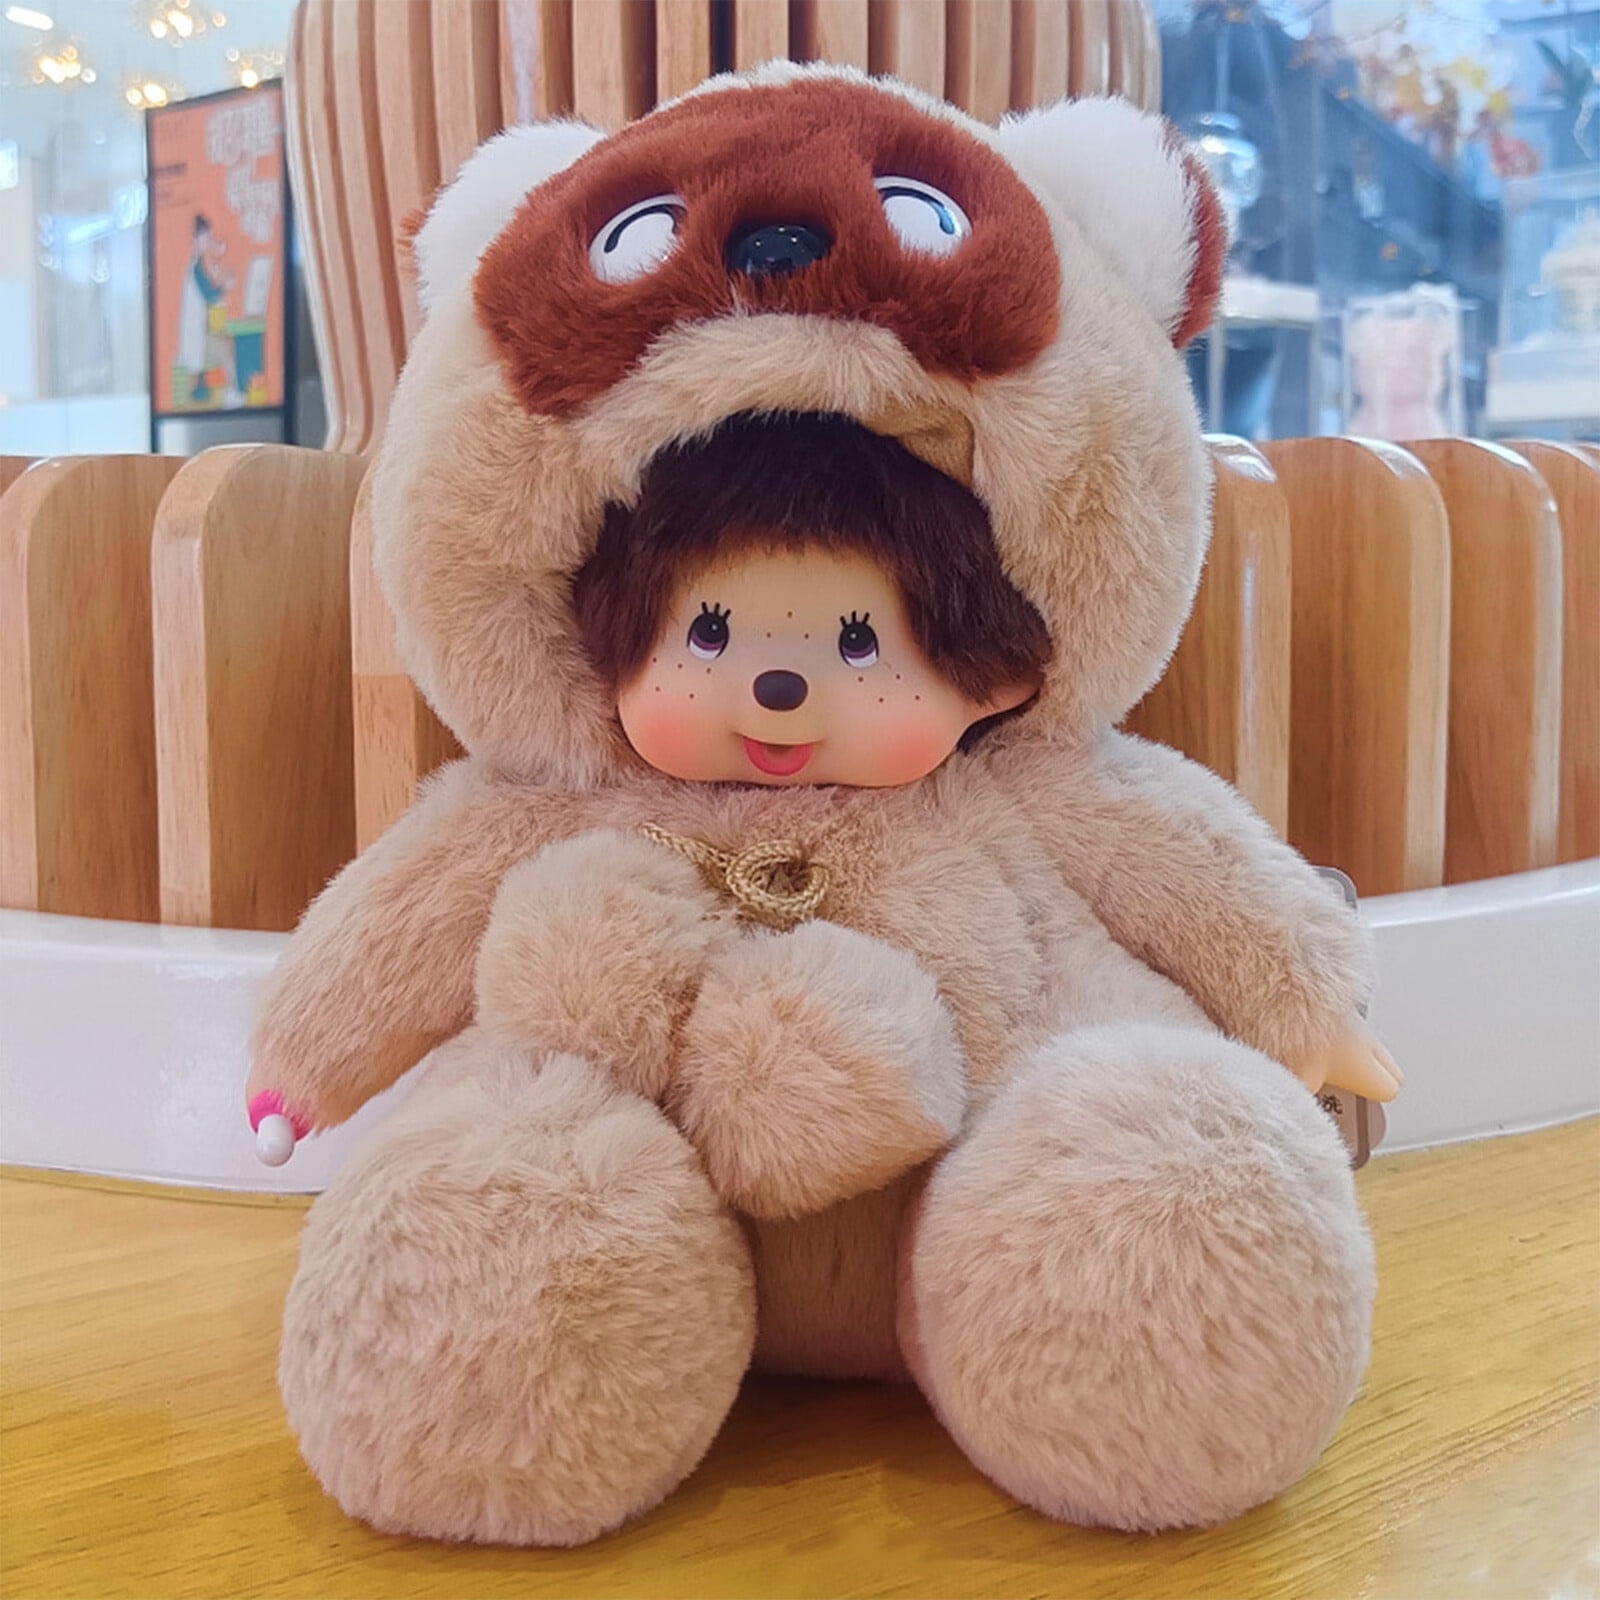 Monchhichi Stitch Plush Doll Toy For Fans Children 14369716879 